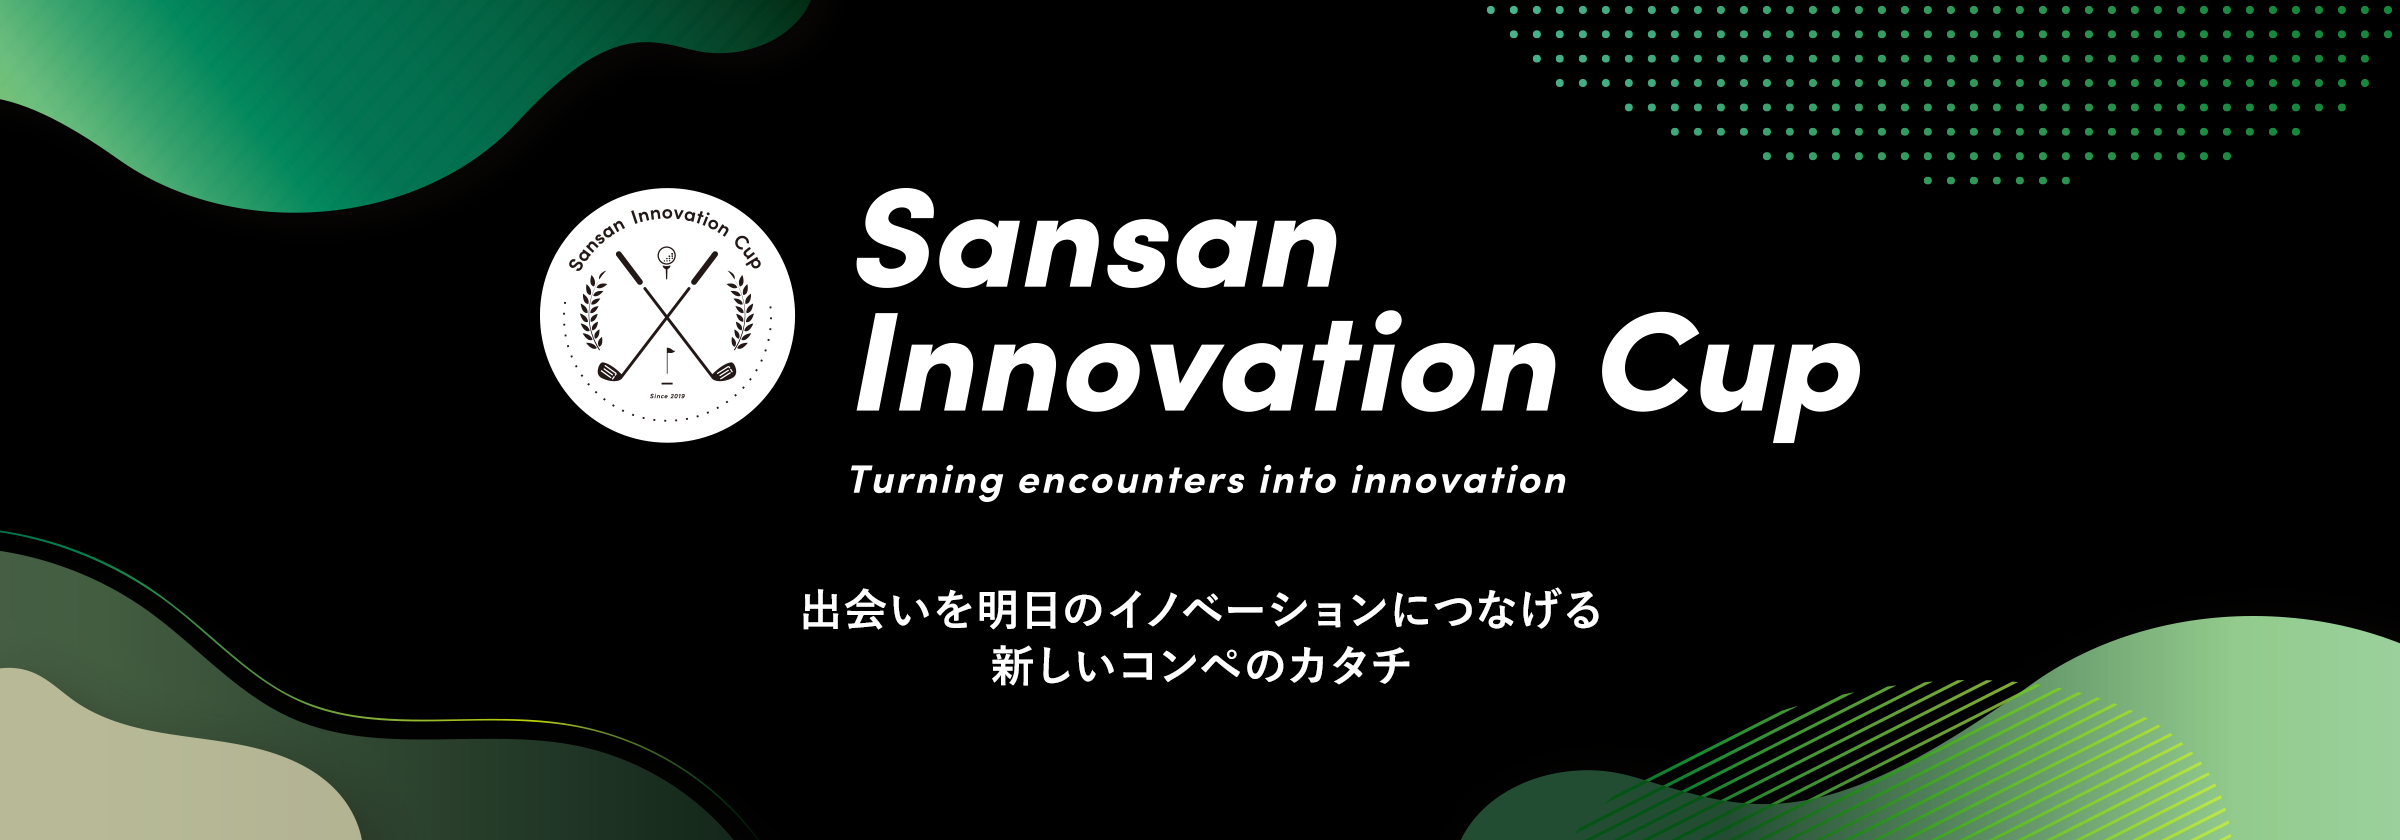 Sansan Innovation Cup 出会いを明日のイノベーションにつなげる新しいコンペのカタチ